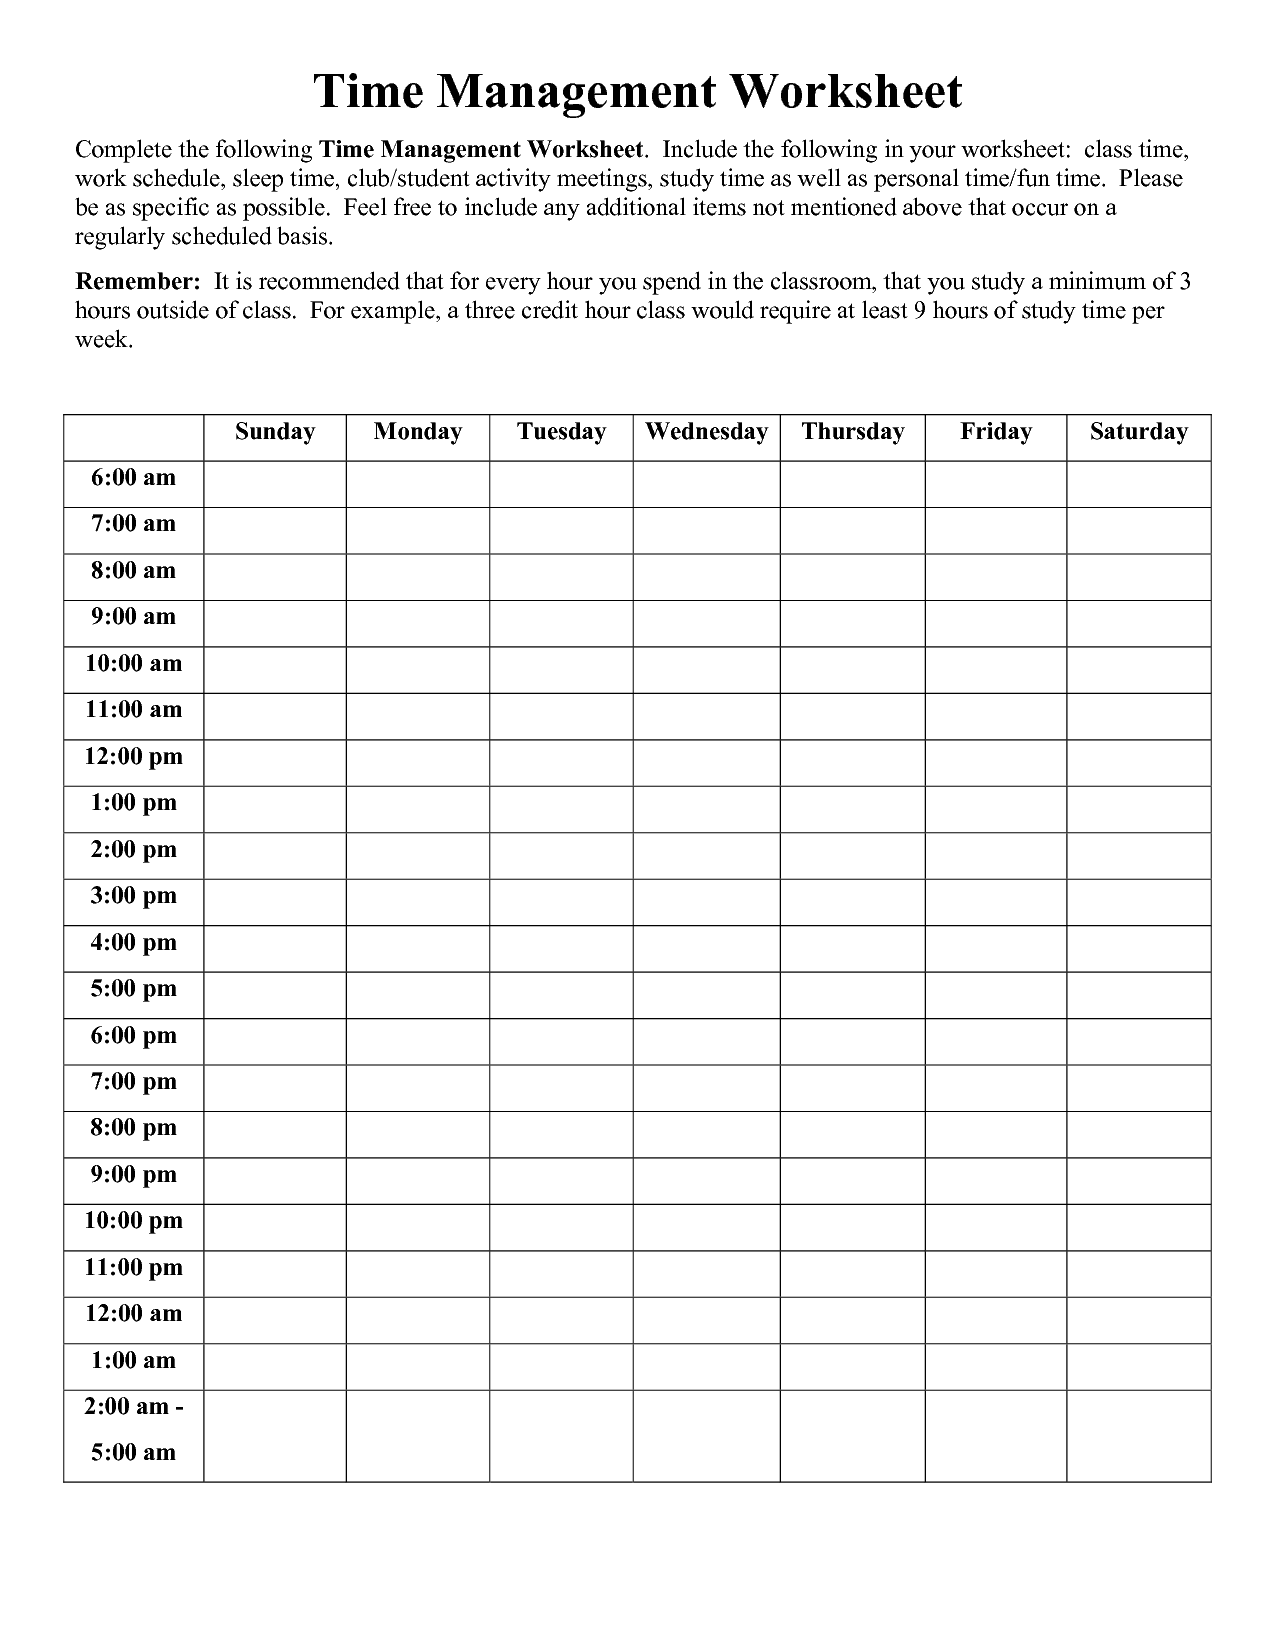 Time Management Worksheet PDF Time Management Worksheet 